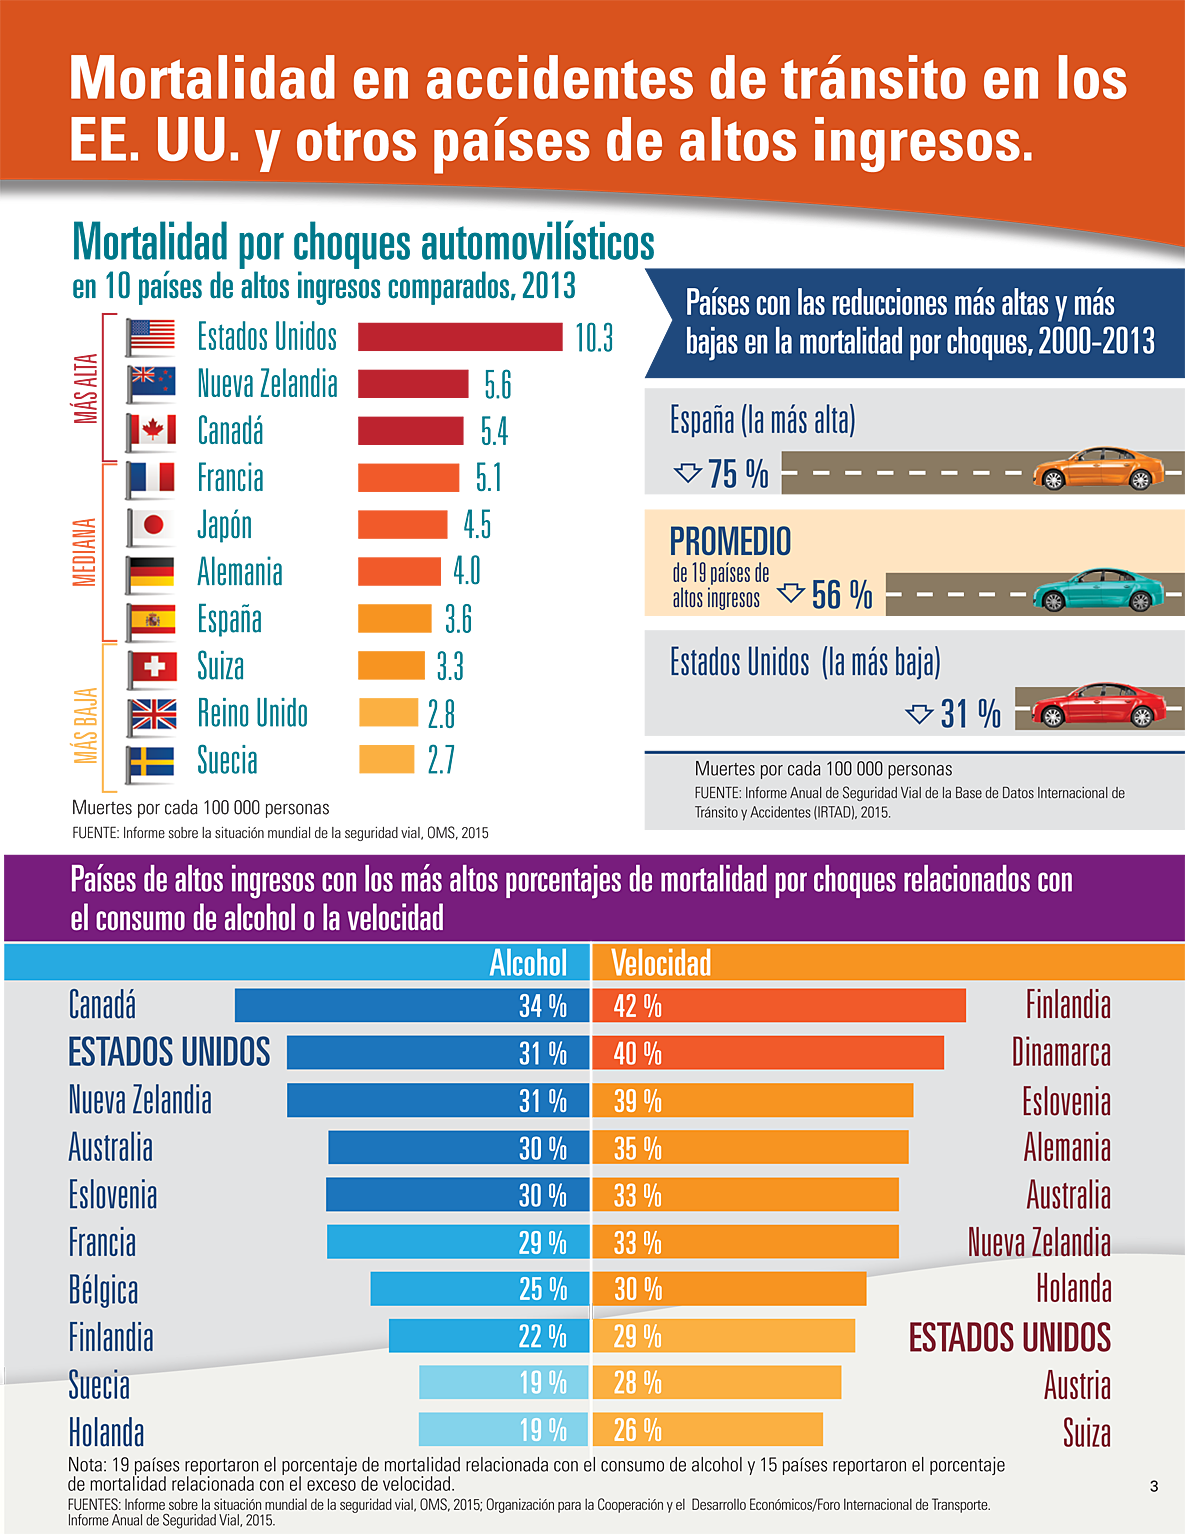 Gráfica de barras que muestra las tasas de mortalidad por choques automovilísticos en 10 países de altos ingresos comparados: Alemania, Canadá, España, Estados Unidos, Francia, Japón, Nueva Zelandia, Reino Unido, Suecia y Suiza. 